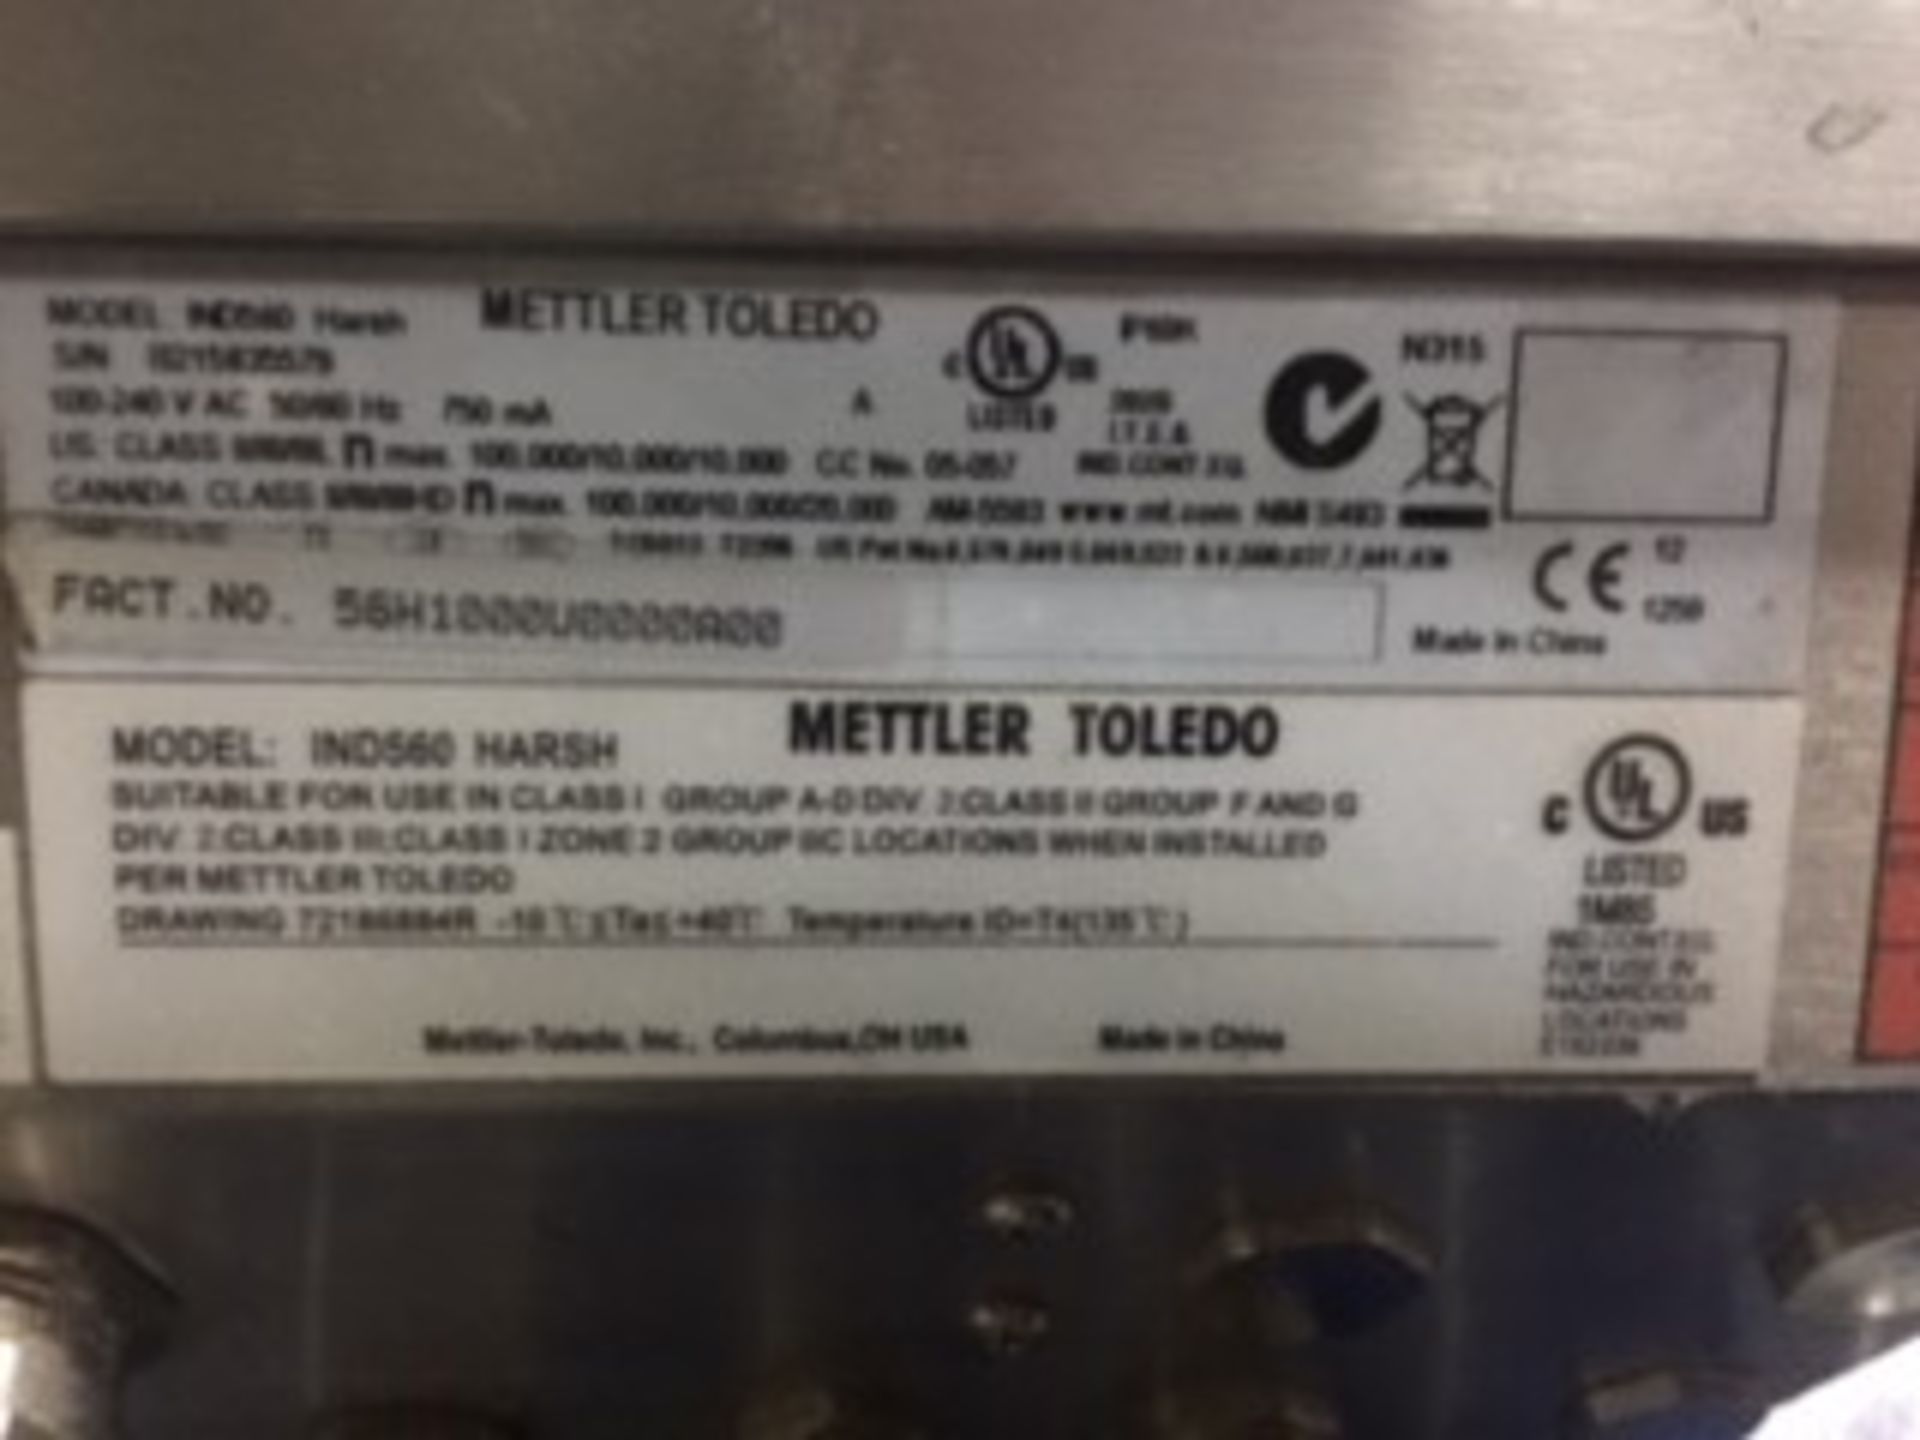 METTLER TOLEDO SCALE; MODEL IND560, S/N B2125-35579, 50/60 HZ - Image 3 of 3